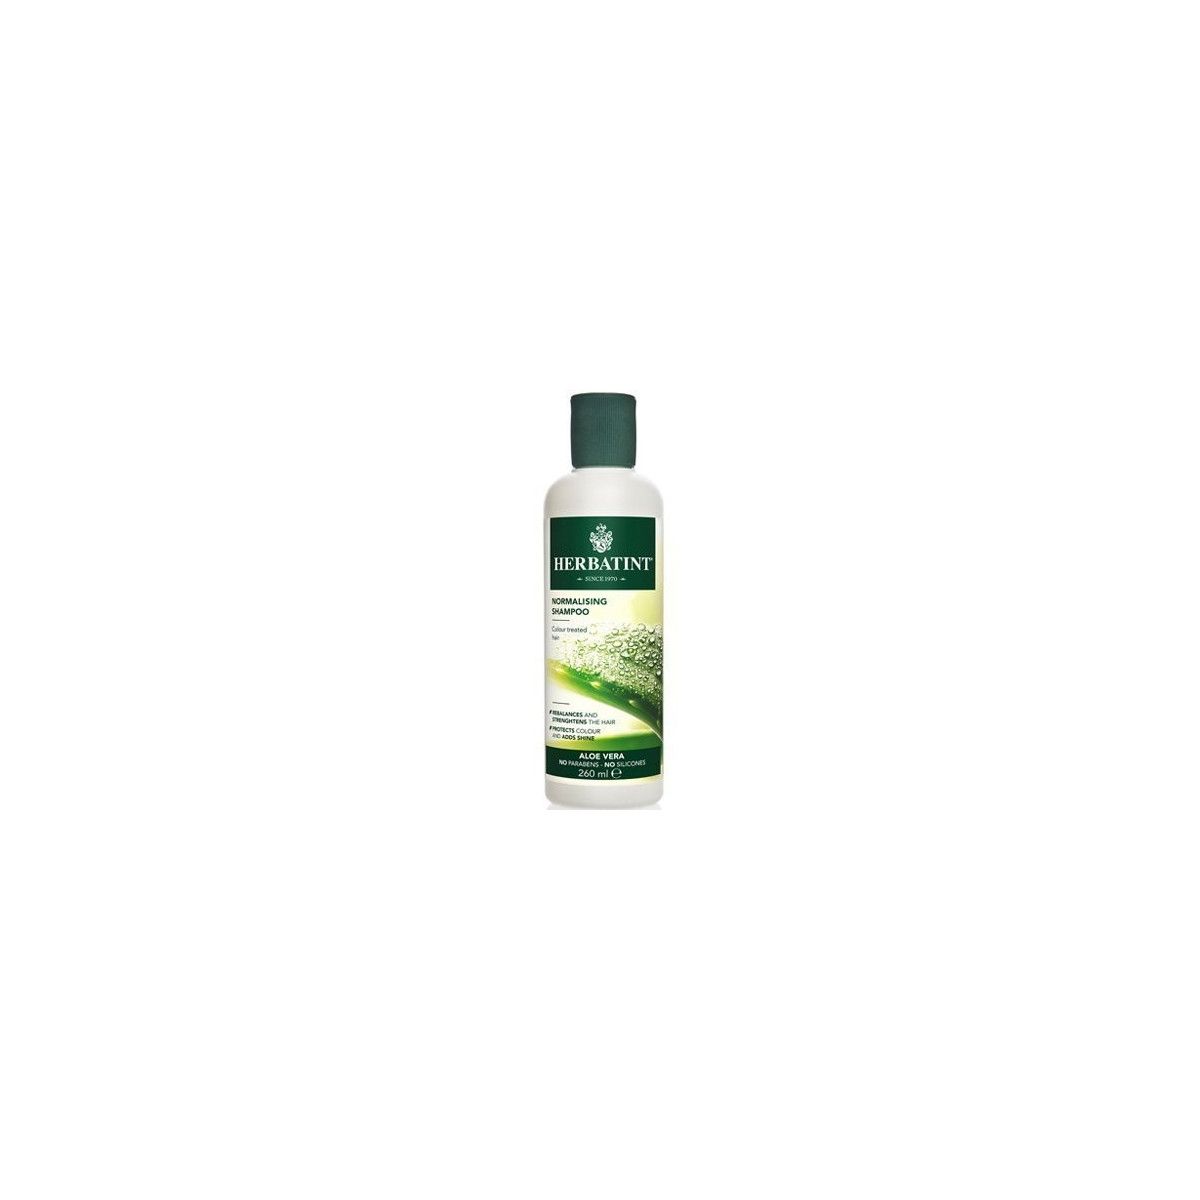 Herbatint Normalising szampon normalizujący do włosów 260ml